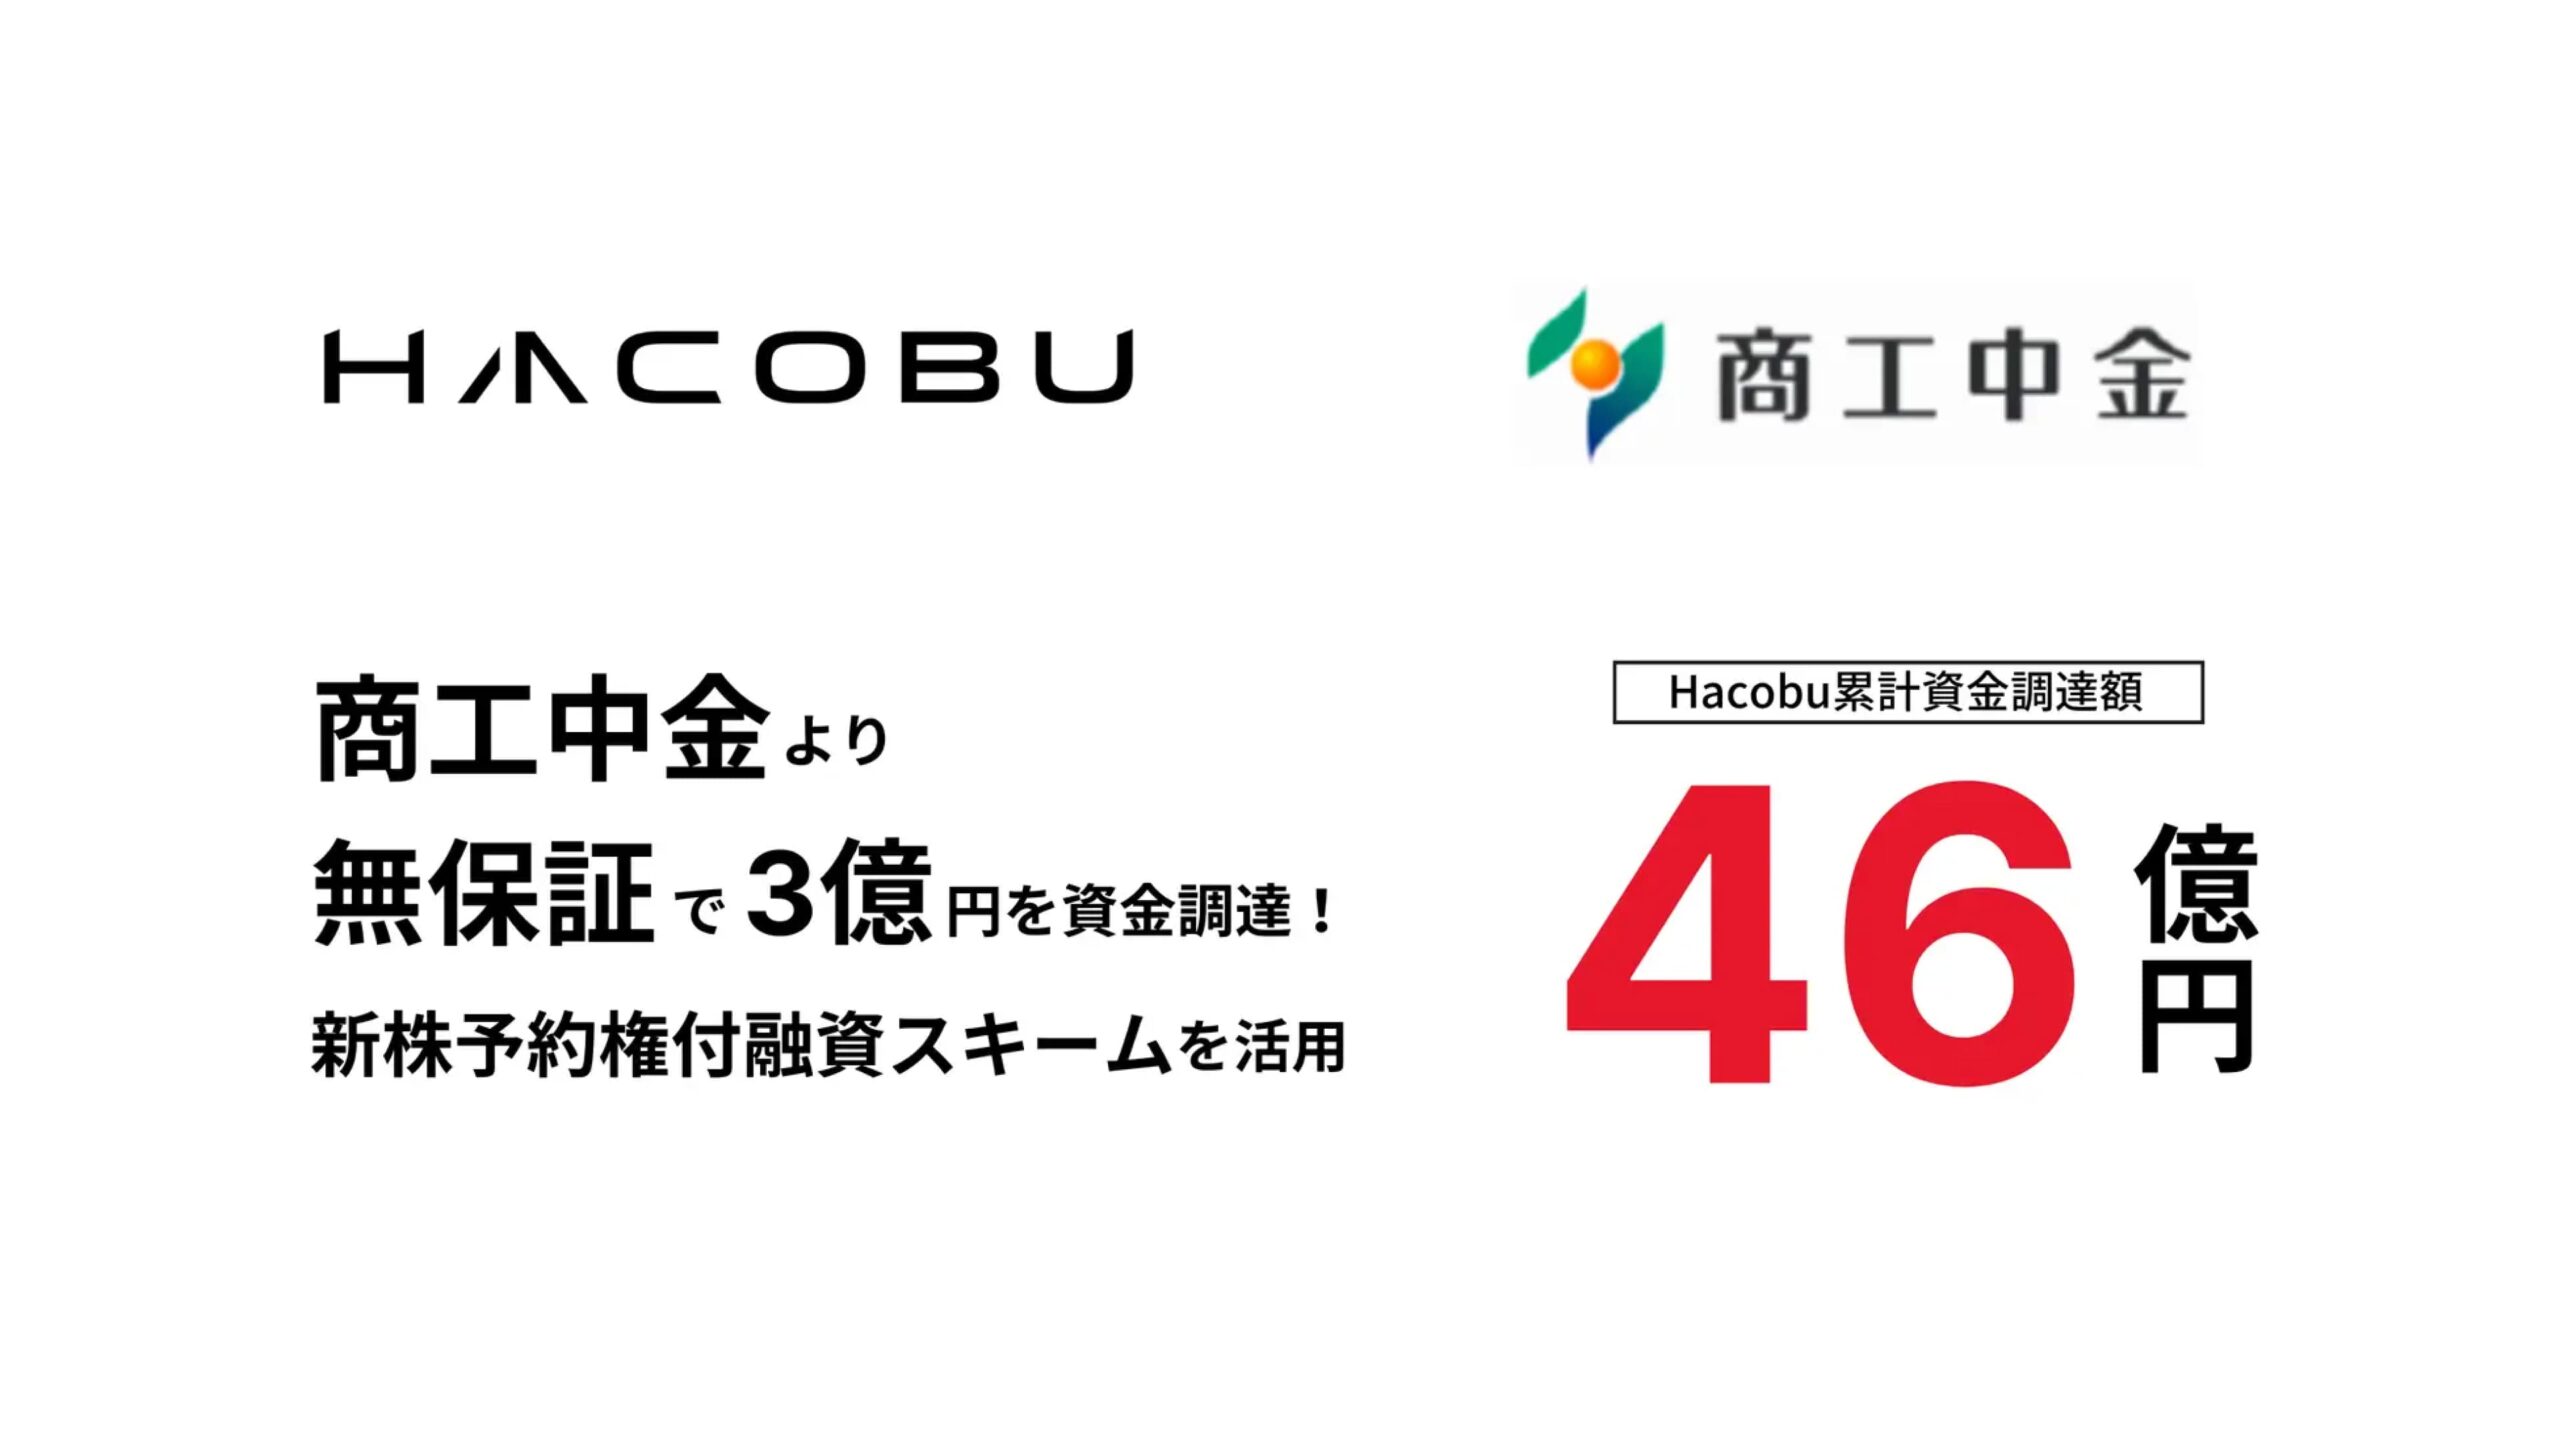 株式会社Hacobu（ハコブ）が商工組合中央金庫から3億円を調達——累積調達額は46億円に